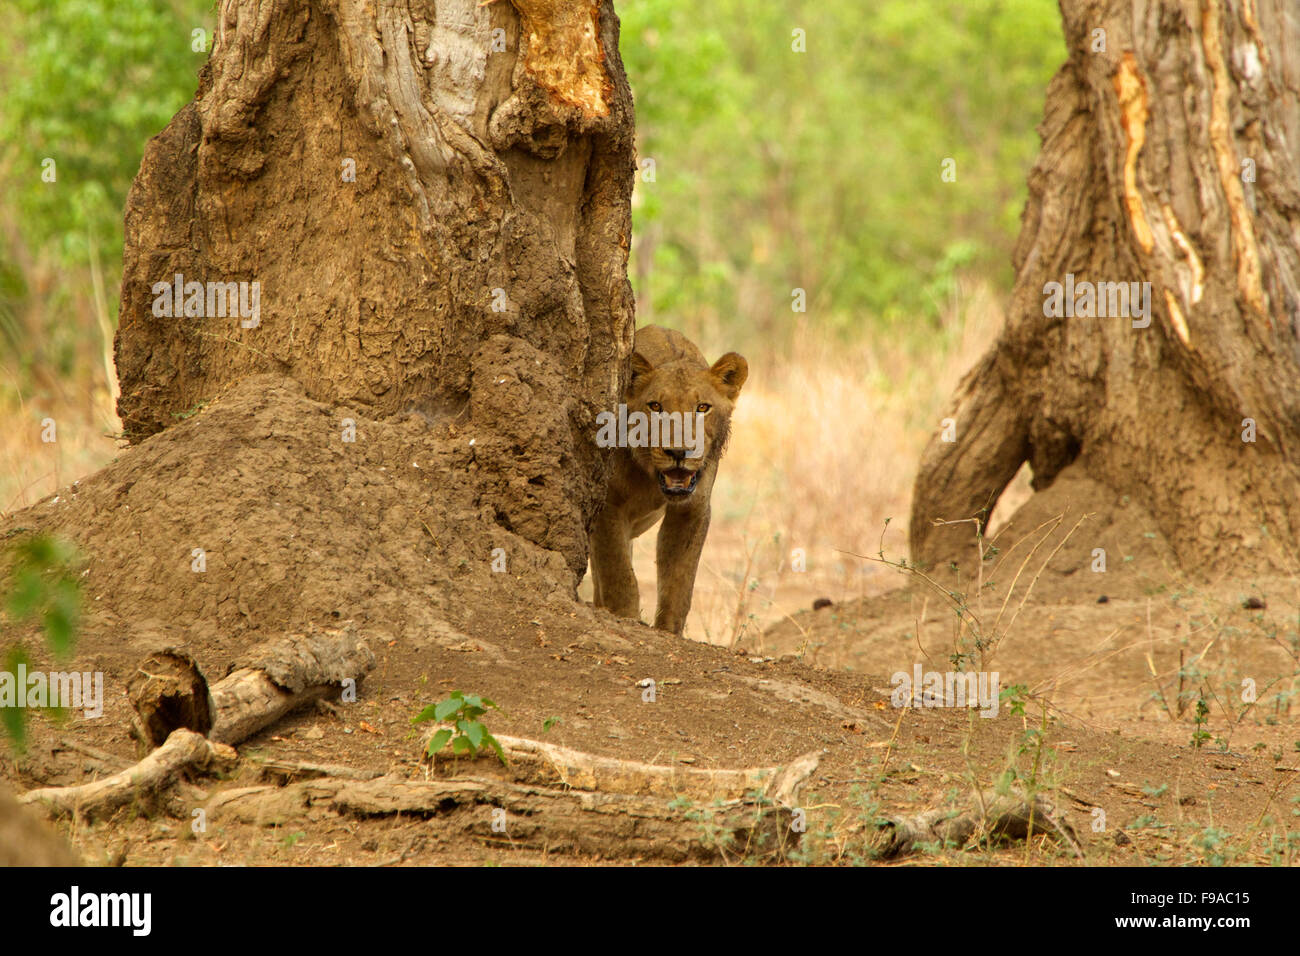 Young juvenile stalking, Mana Pools, Zimbabwe Stock Photo